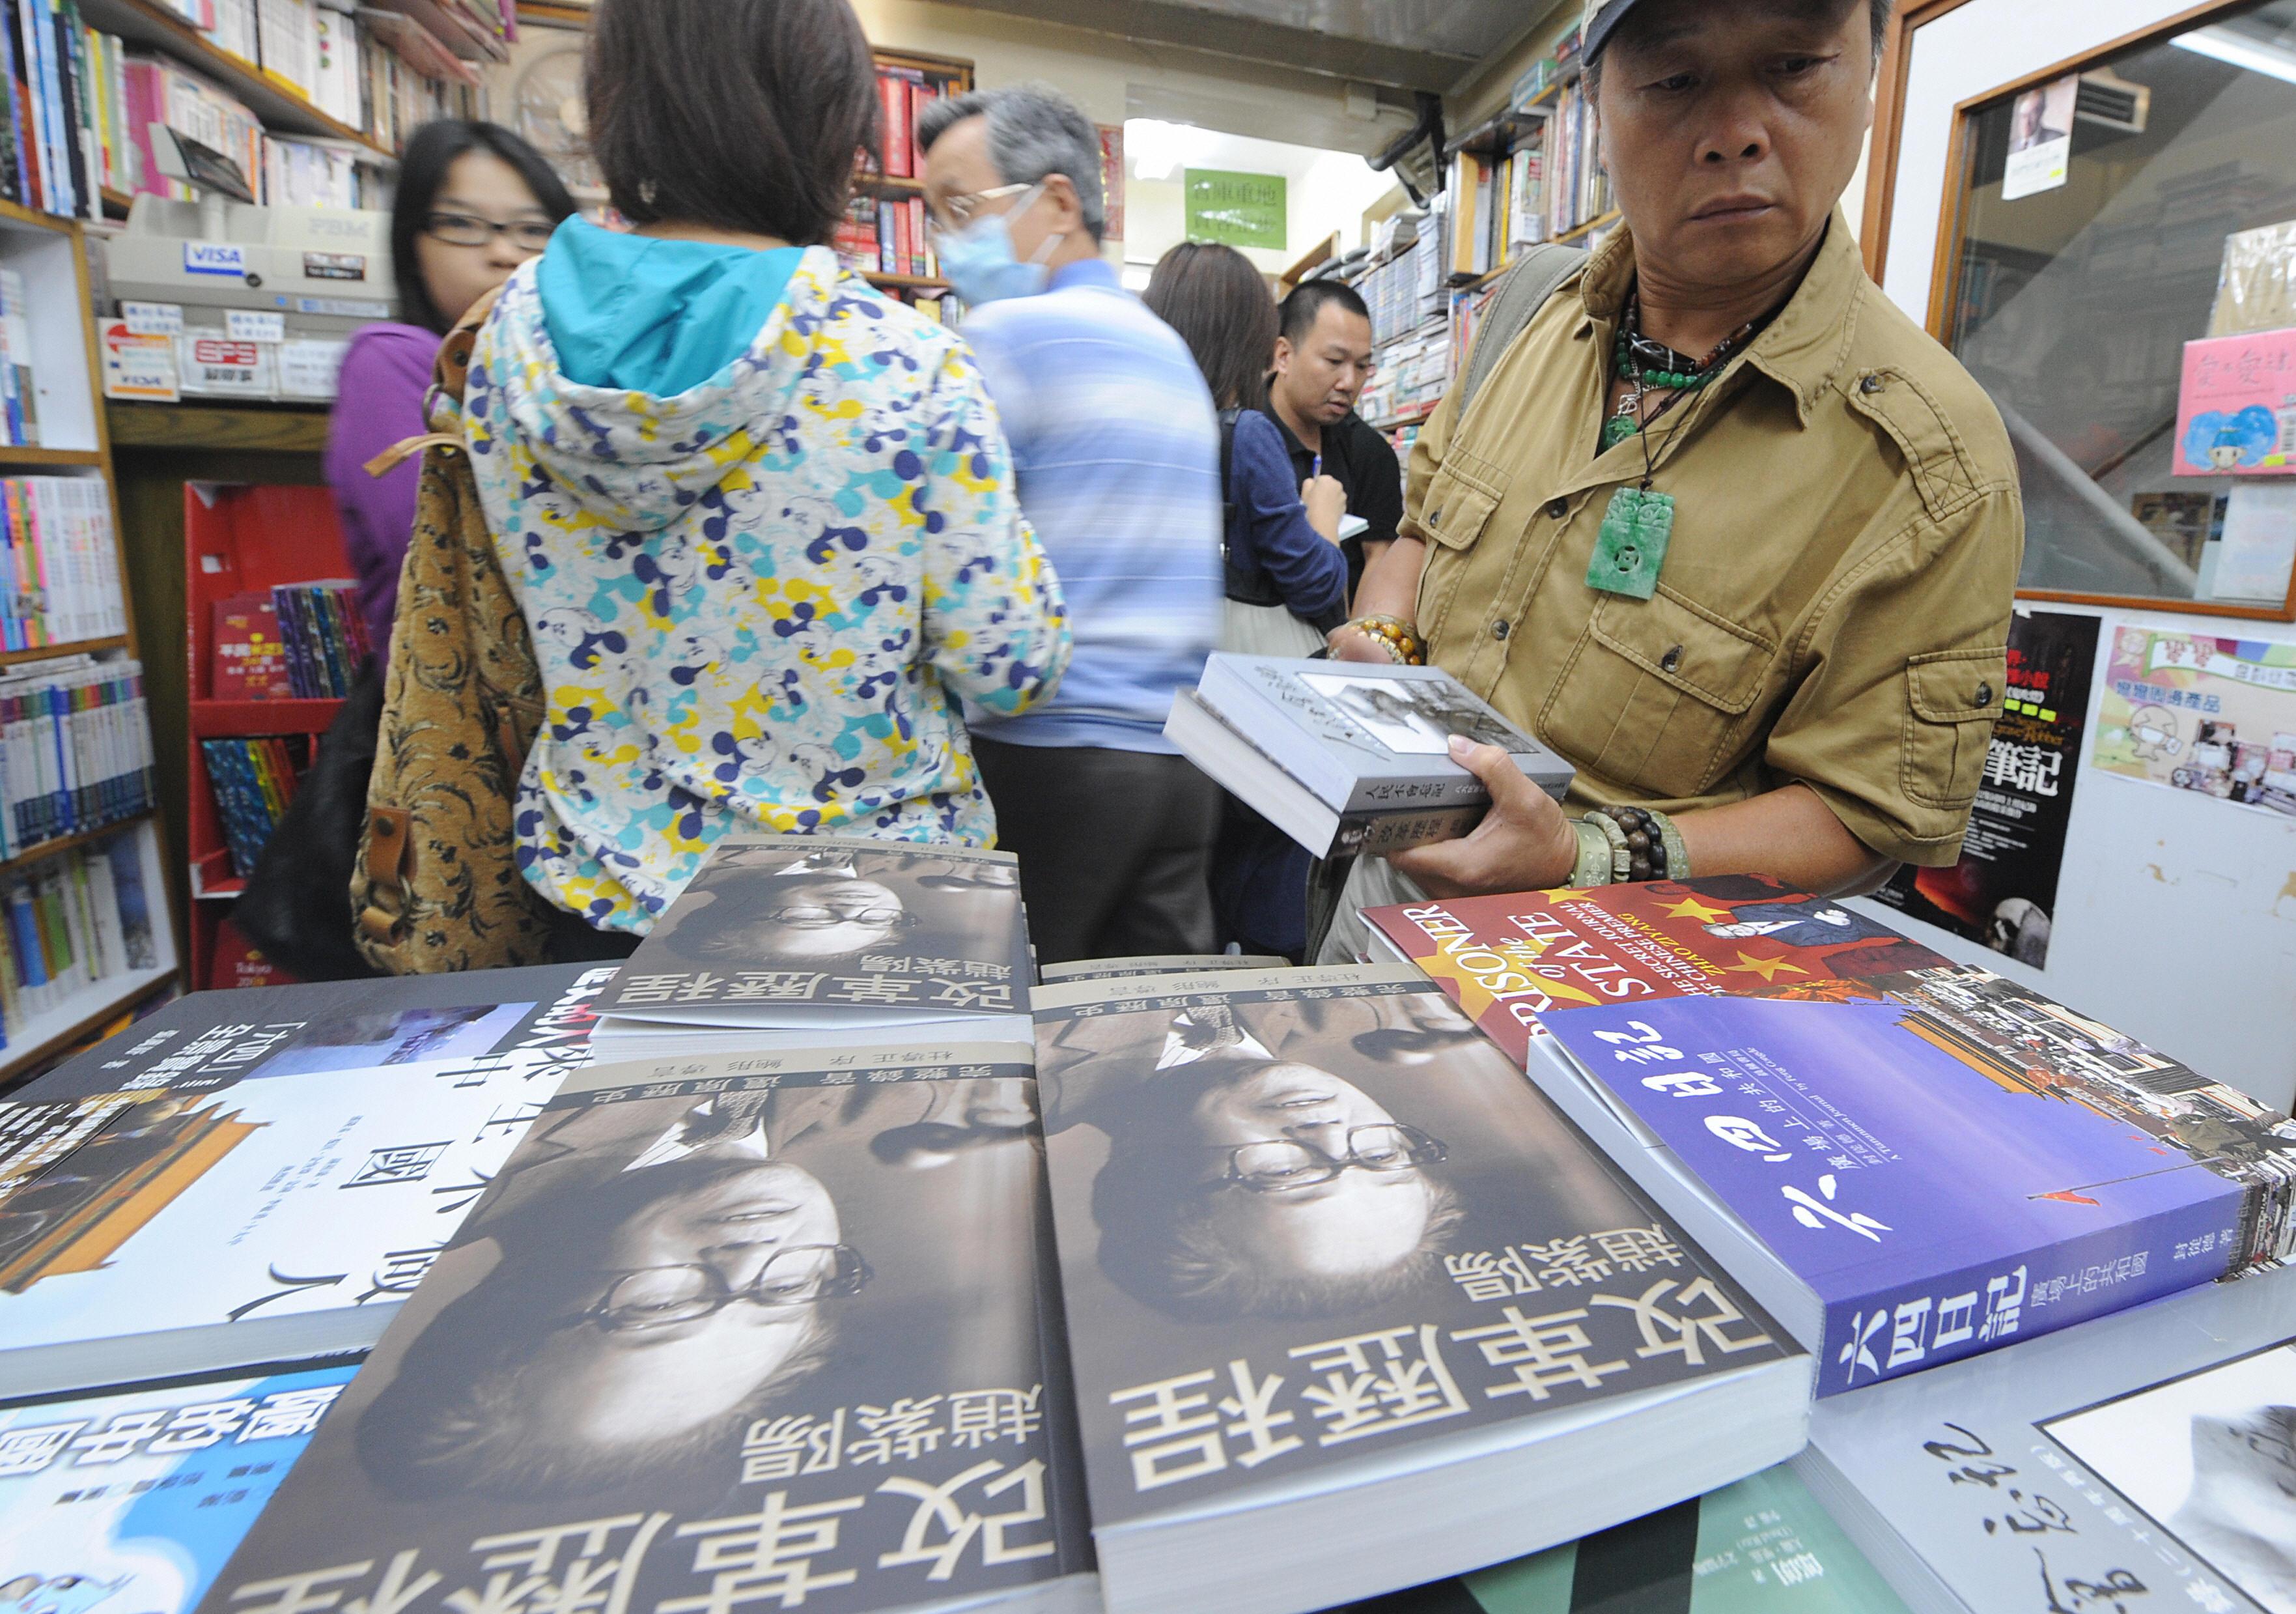 De fyra publicister med kopplingar till en regimkritisk förläggare i Hongkong som kidnappades i oktober får inget stöd av den kinesiska förläggarföreningen, som är lojal mot den kinesiska regimen. Bilden har inget direkt samband med artikeln.  (Foto: Mike Clarke/AFP/Getty Images)